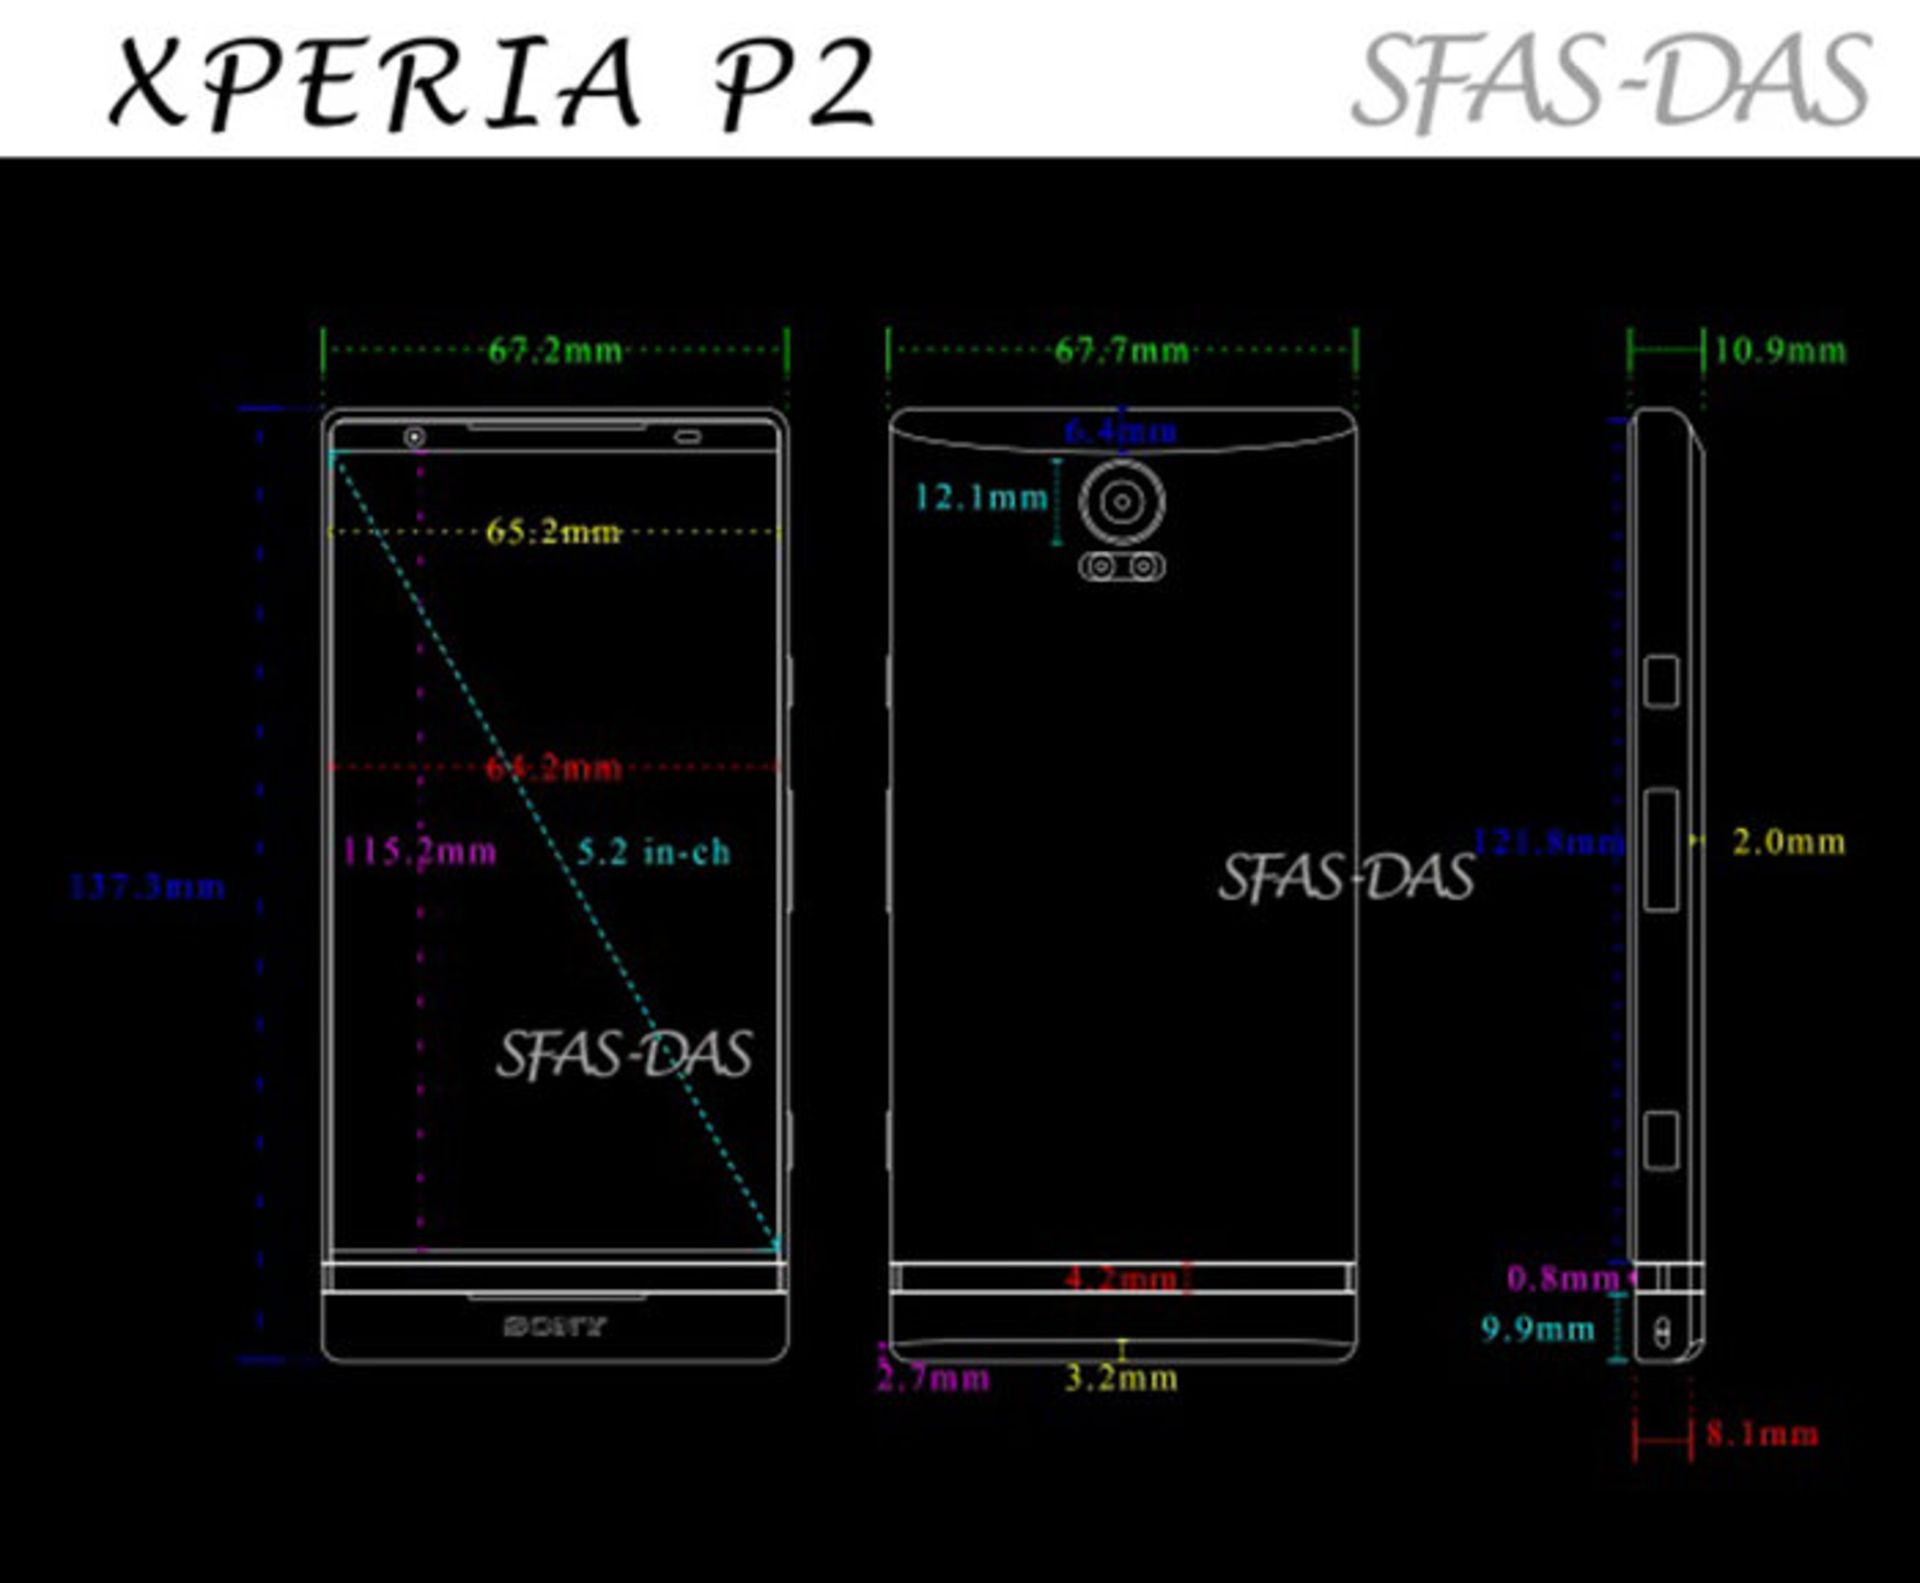 xperia-p2-schematic